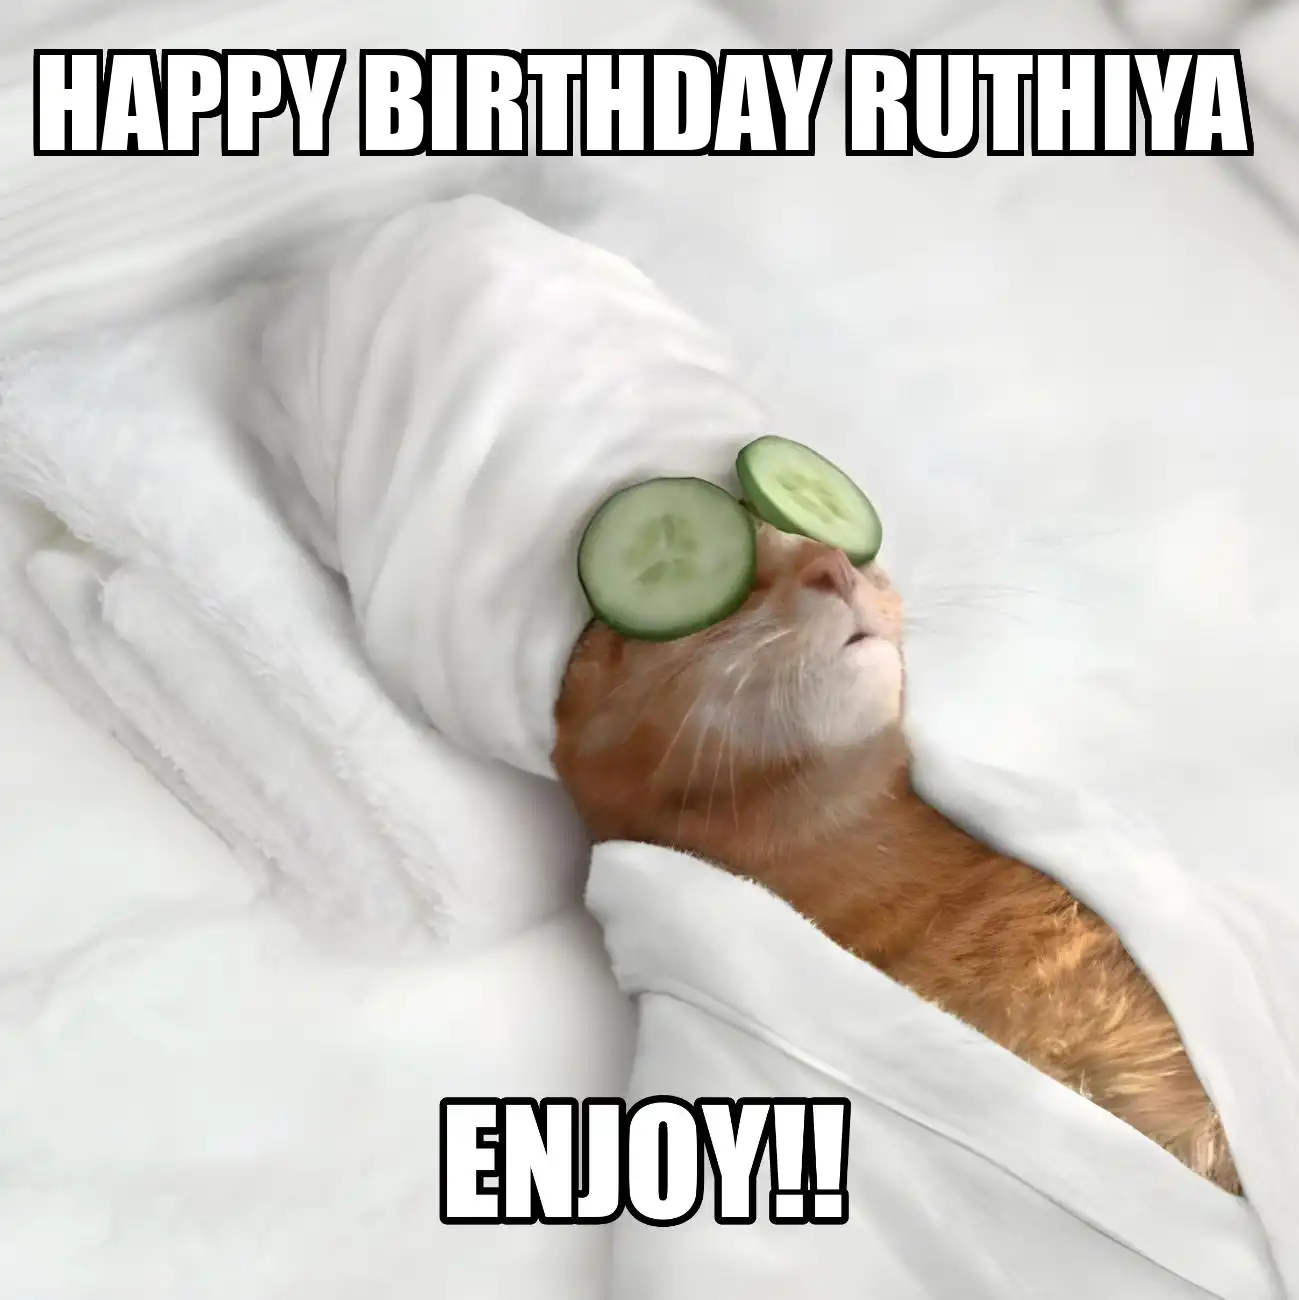 Happy Birthday Ruthiya Enjoy Cat Meme